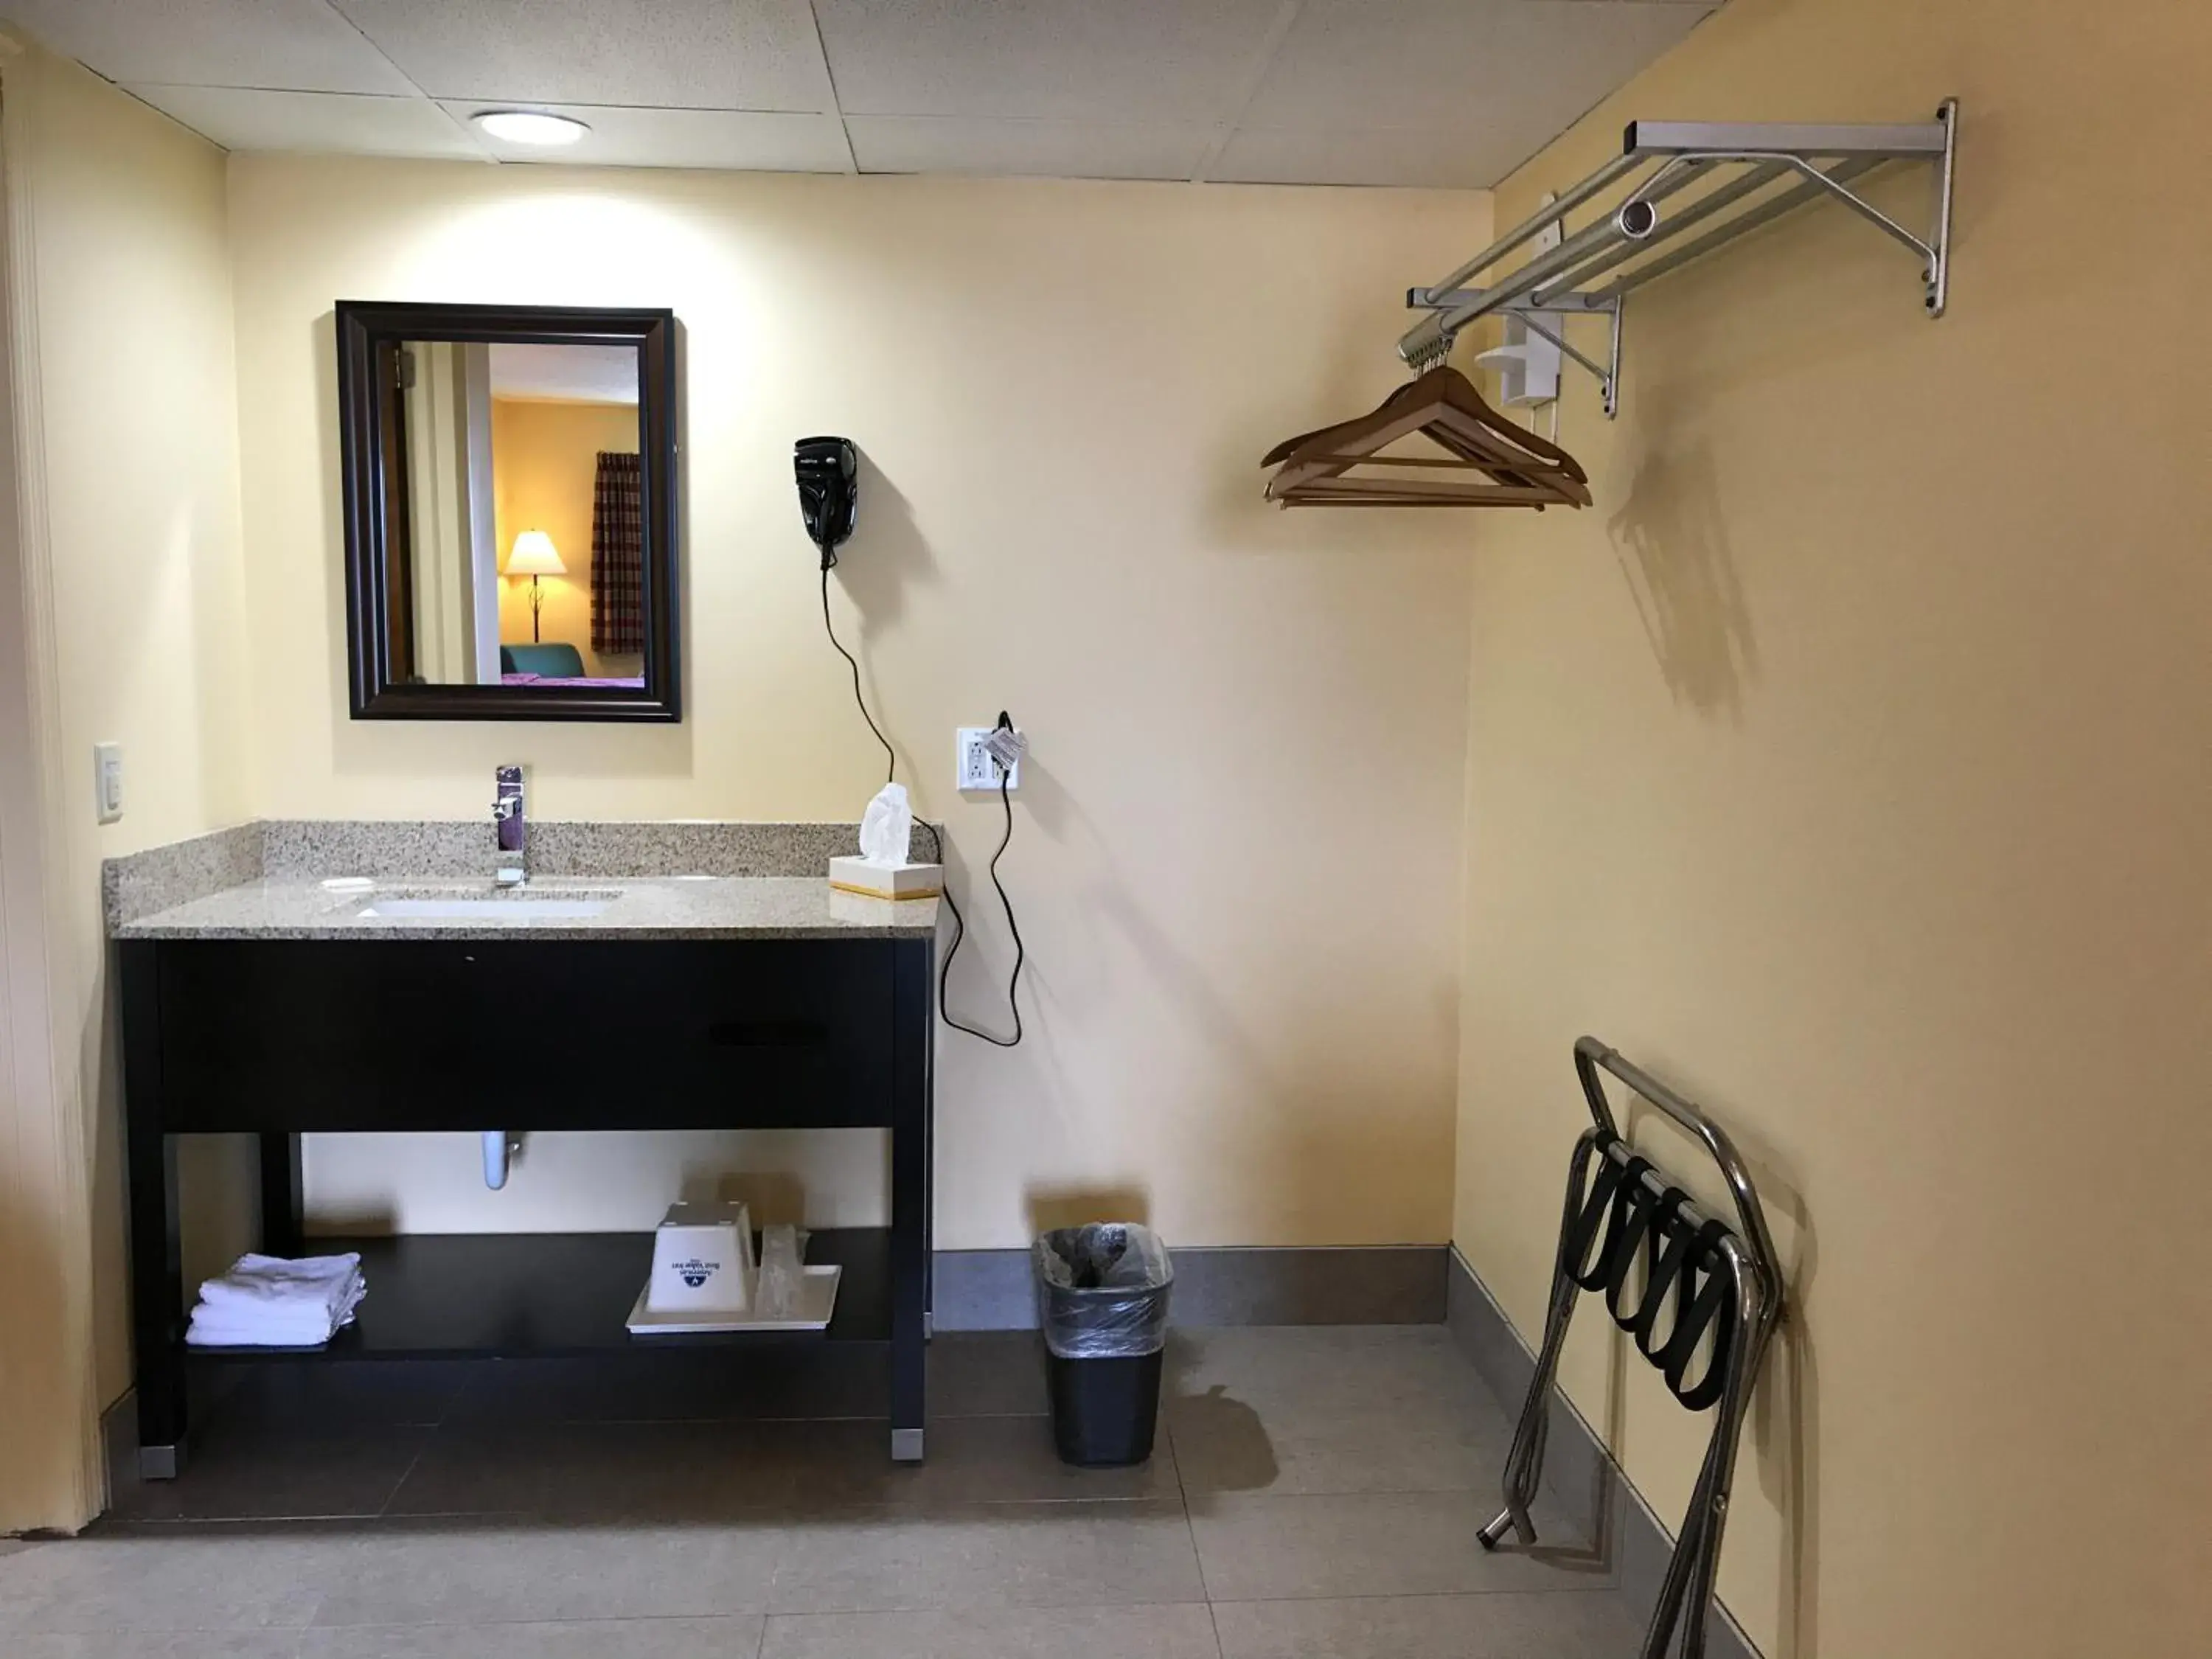 Area and facilities, Bathroom in Soudersburg Motel